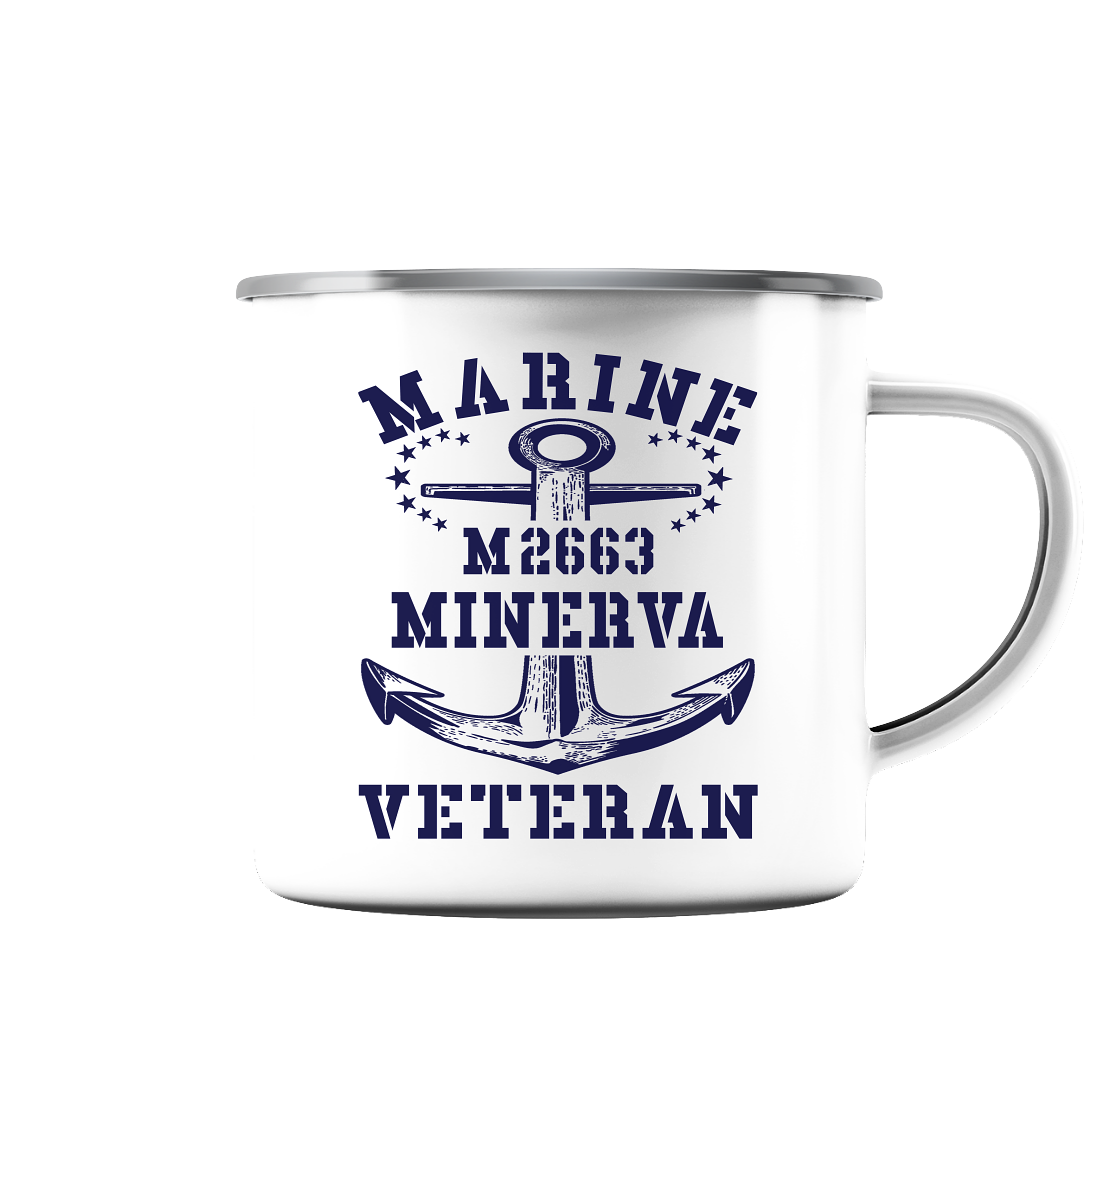 BiMi M2663 MINERVA Marine Veteran - Emaille Tasse (Silber)